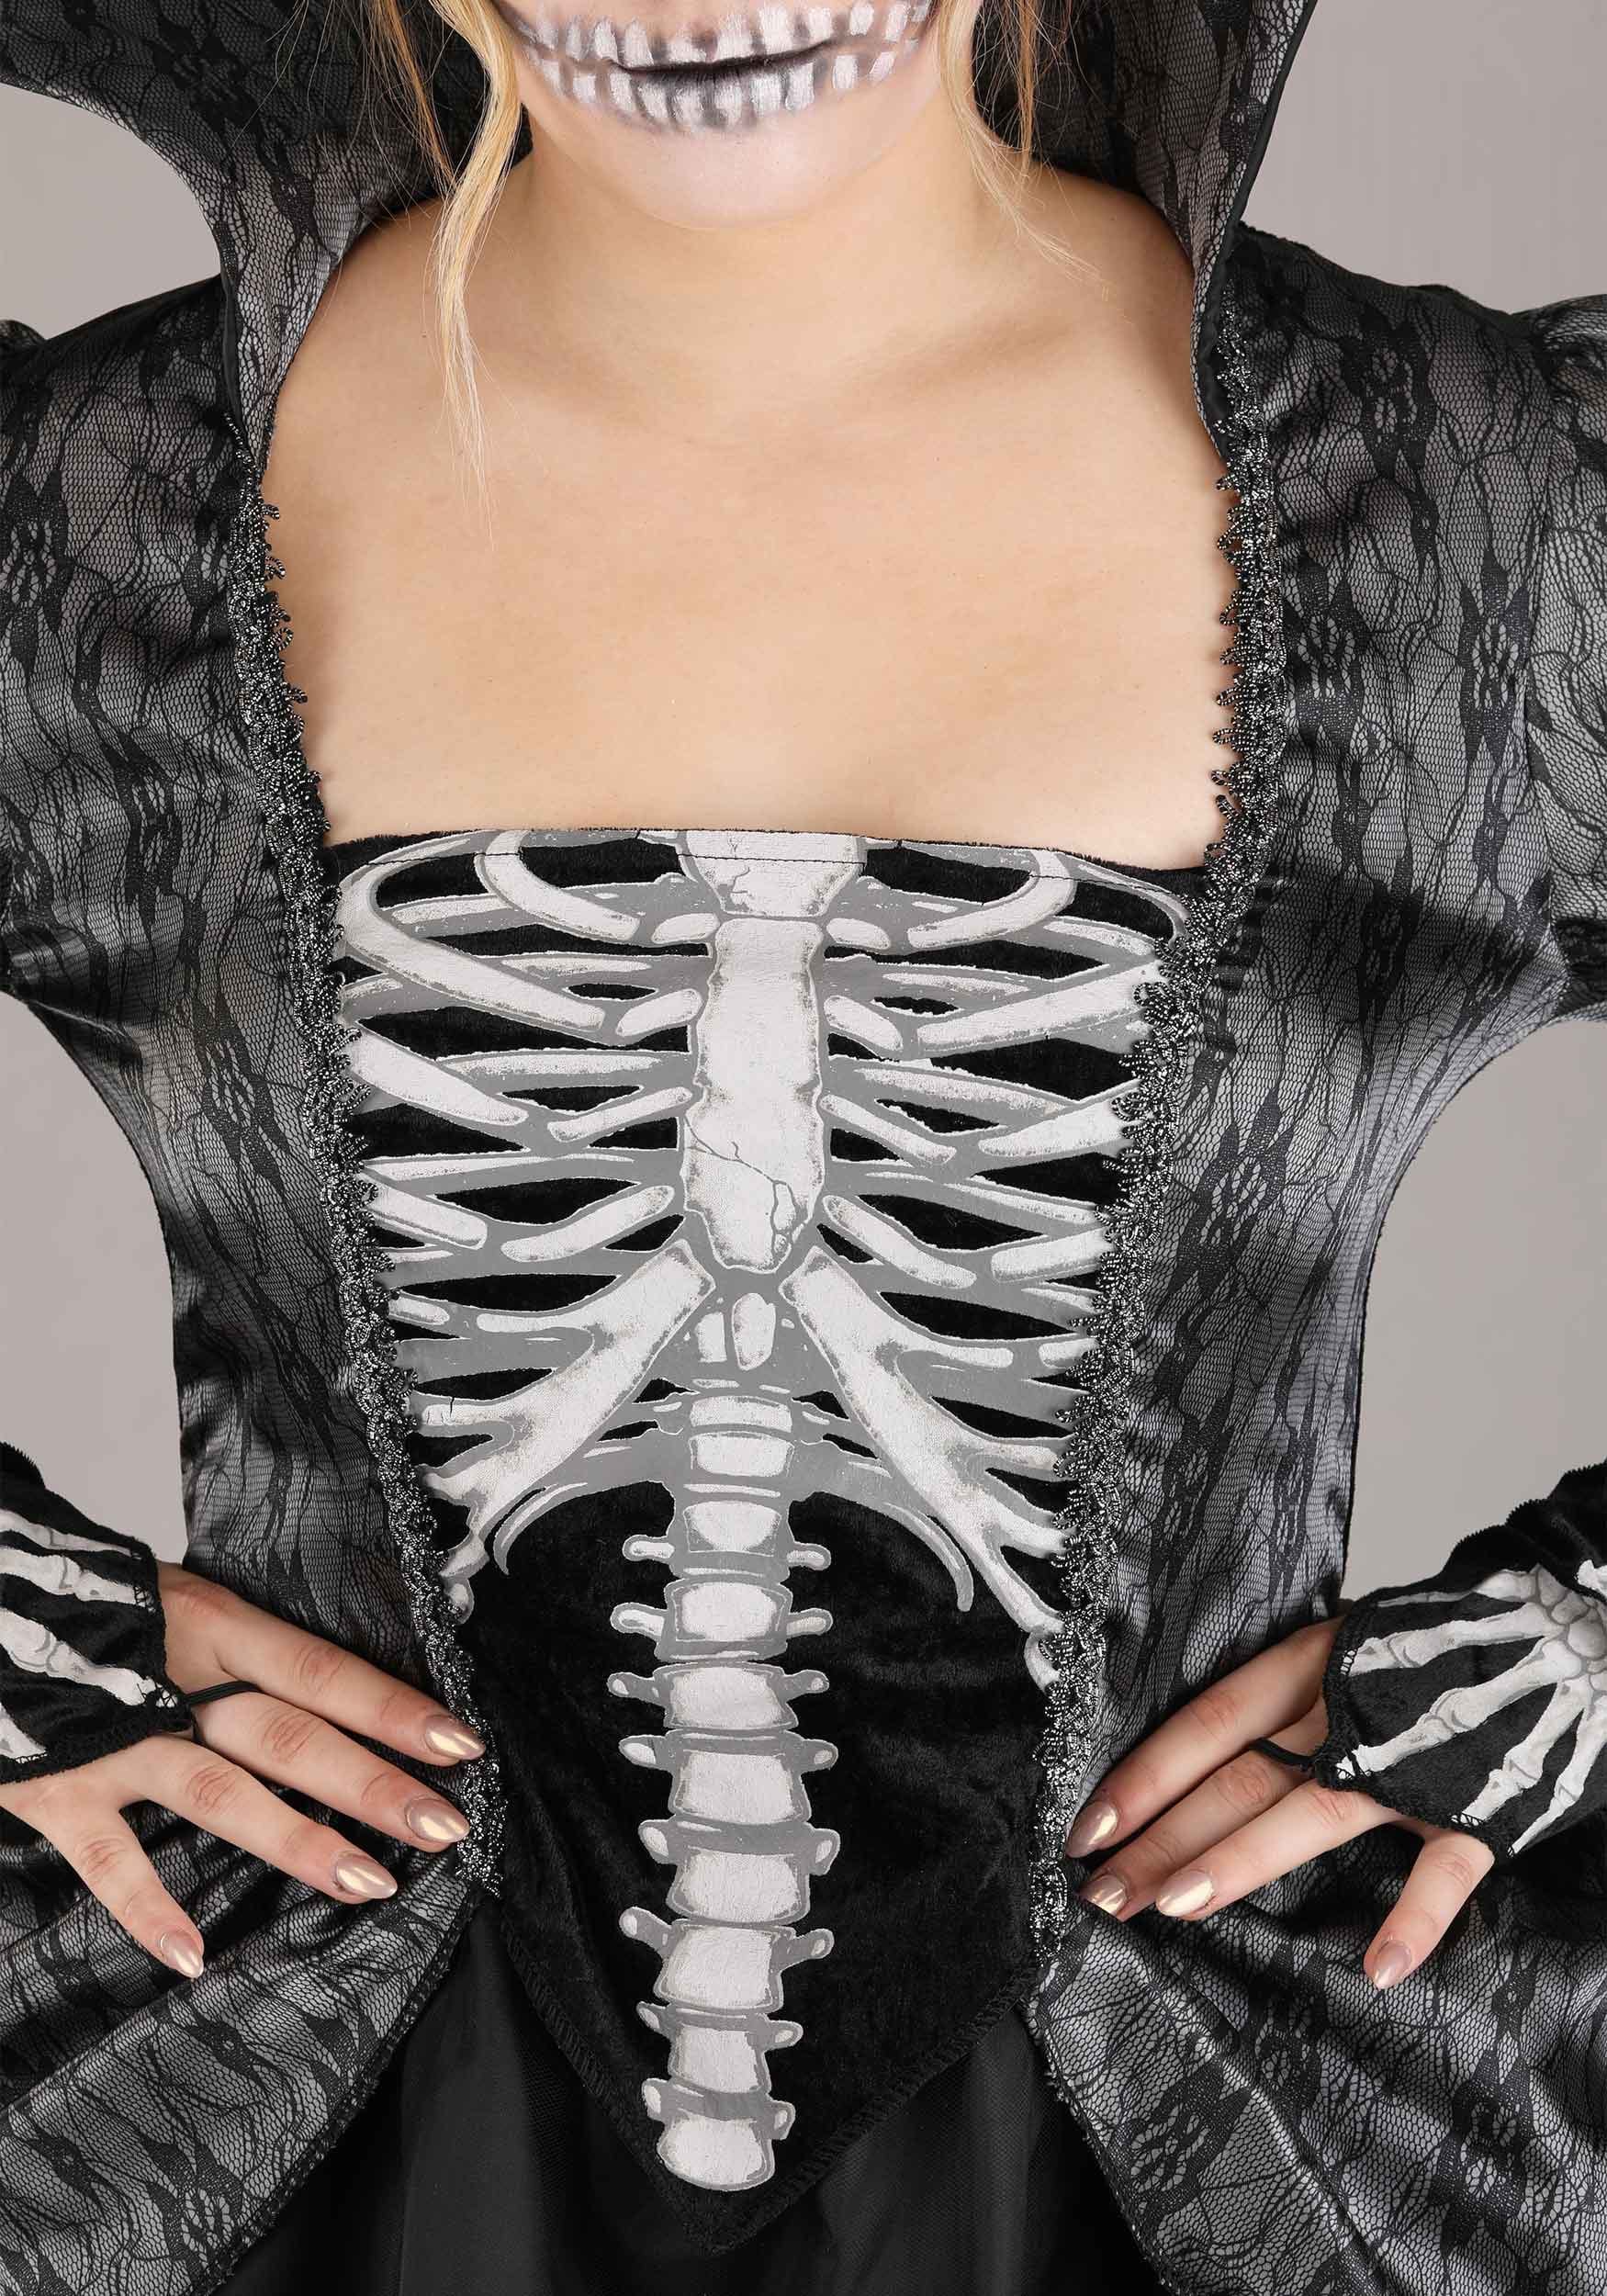 Skeleton Queen Costume For Women